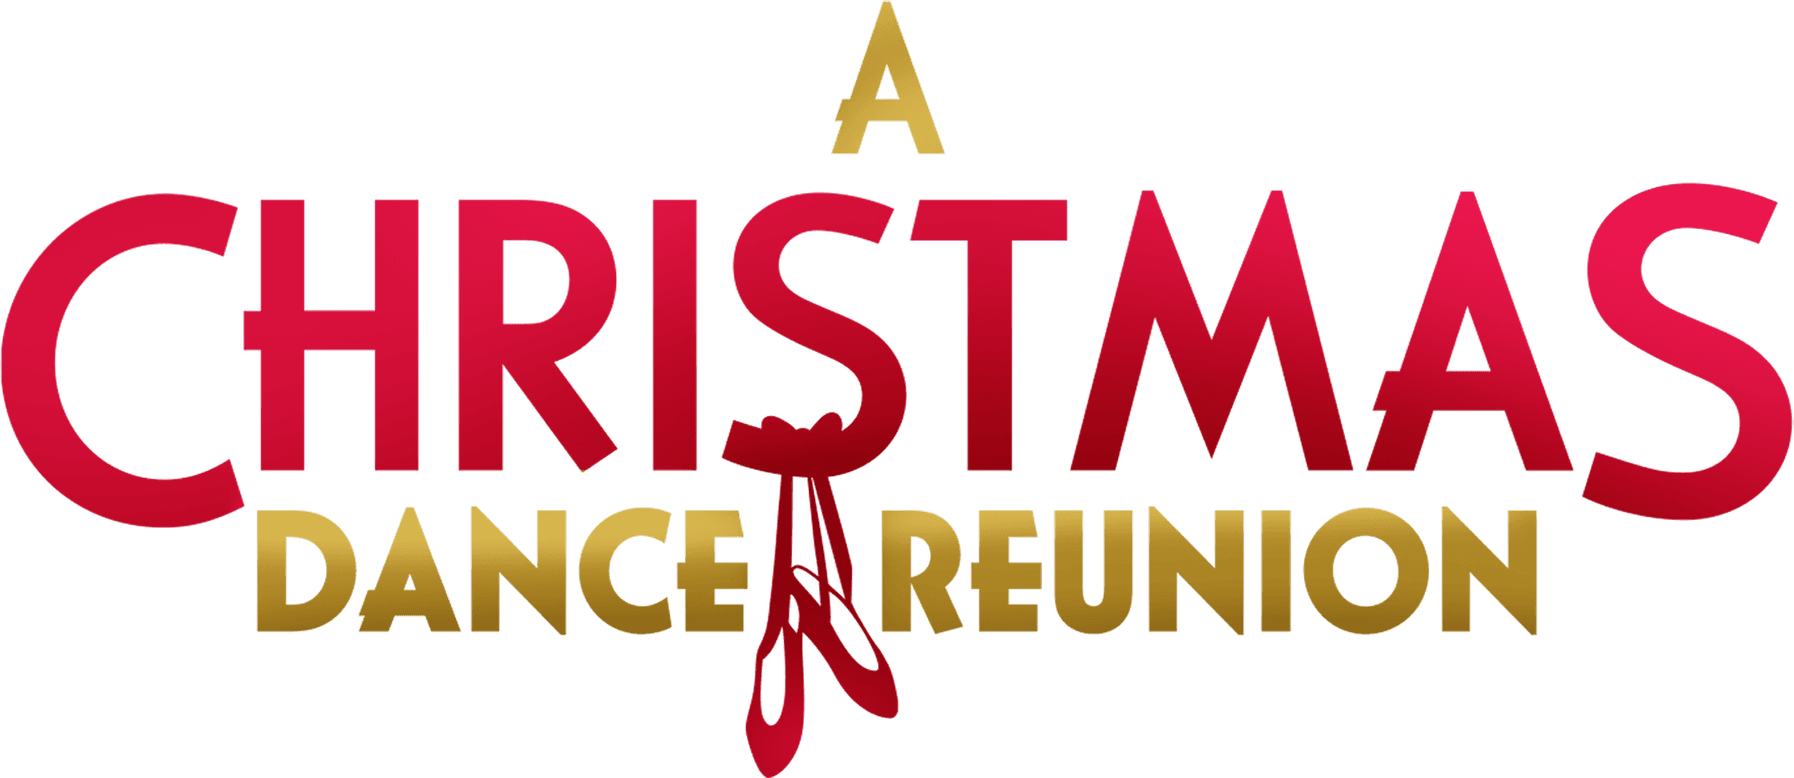 A Christmas Dance Reunion logo